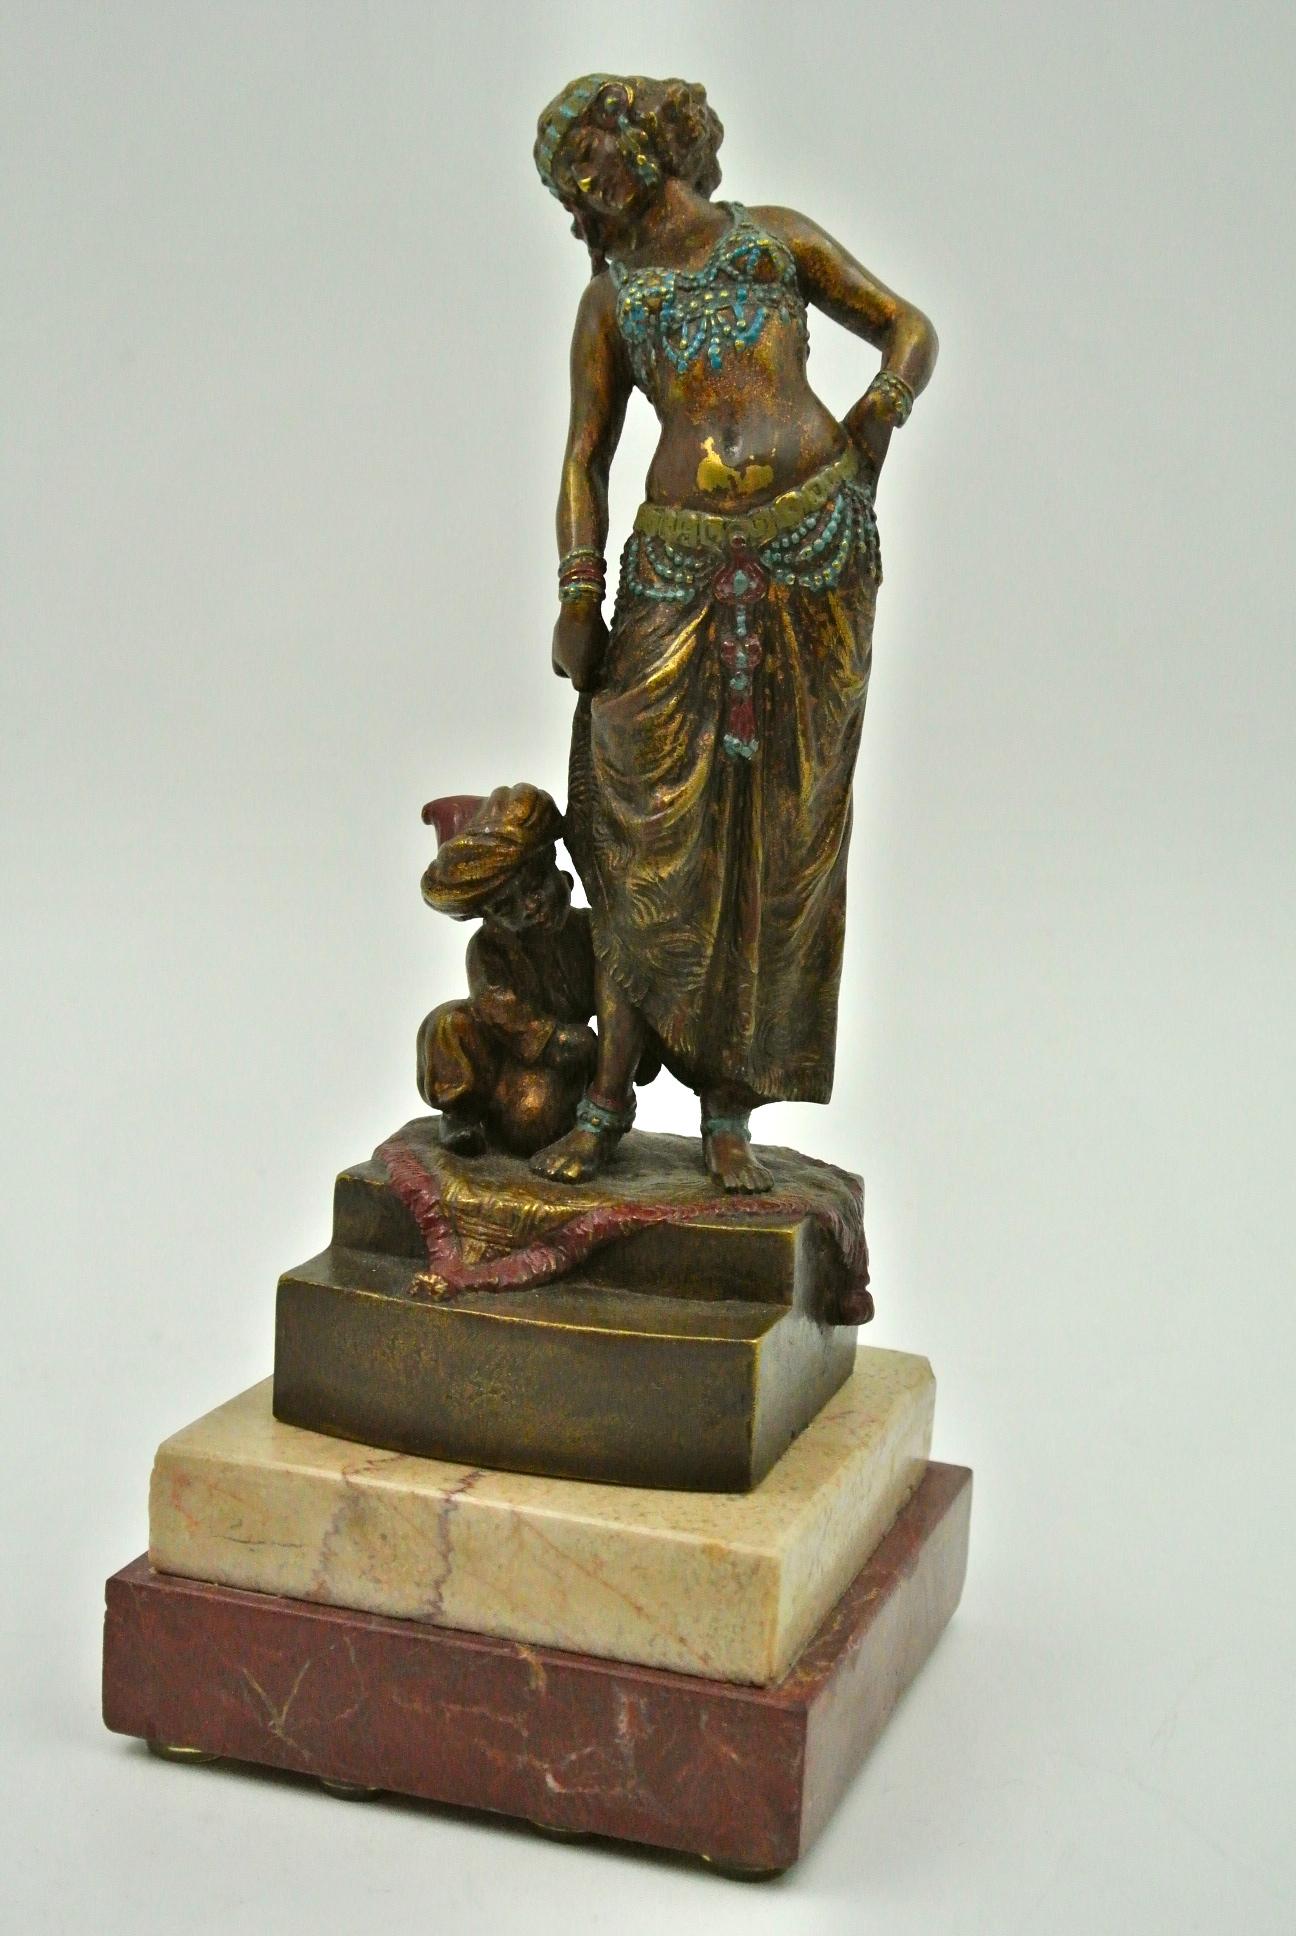 Bronze die Tänzerin und ihre Assistentin, Wien, signiert B,
19. Jahrhundert.
Maße: H 27 cm, B 9,5 cm, T 10 cm.